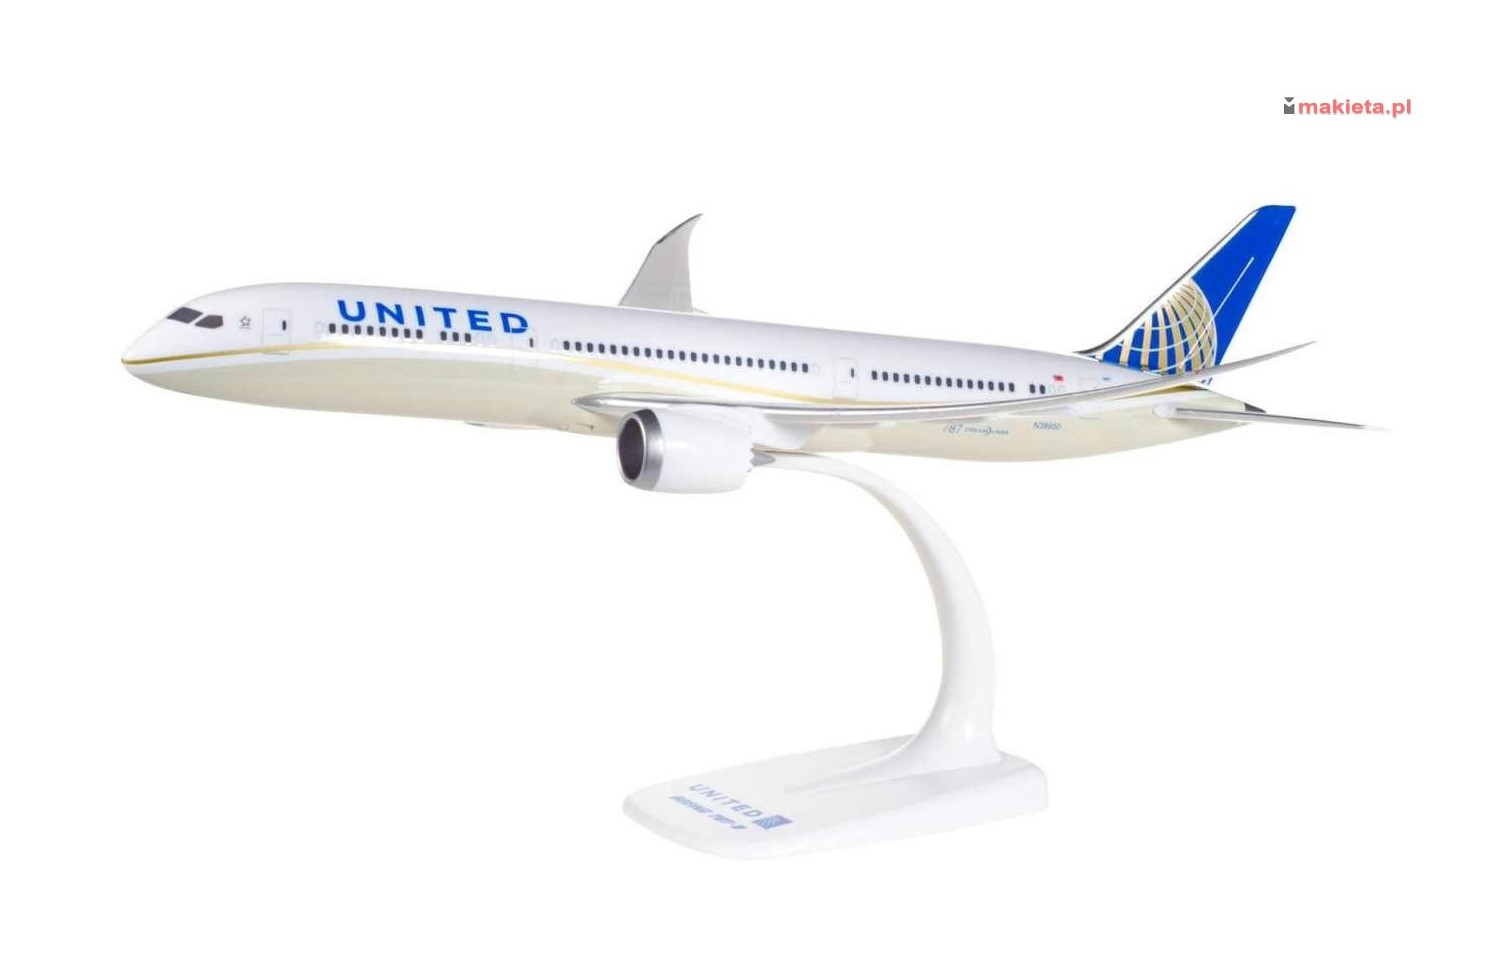 Herpa 610452. United Airlines Boeing 787-9 Dreamliner, skala 1:200